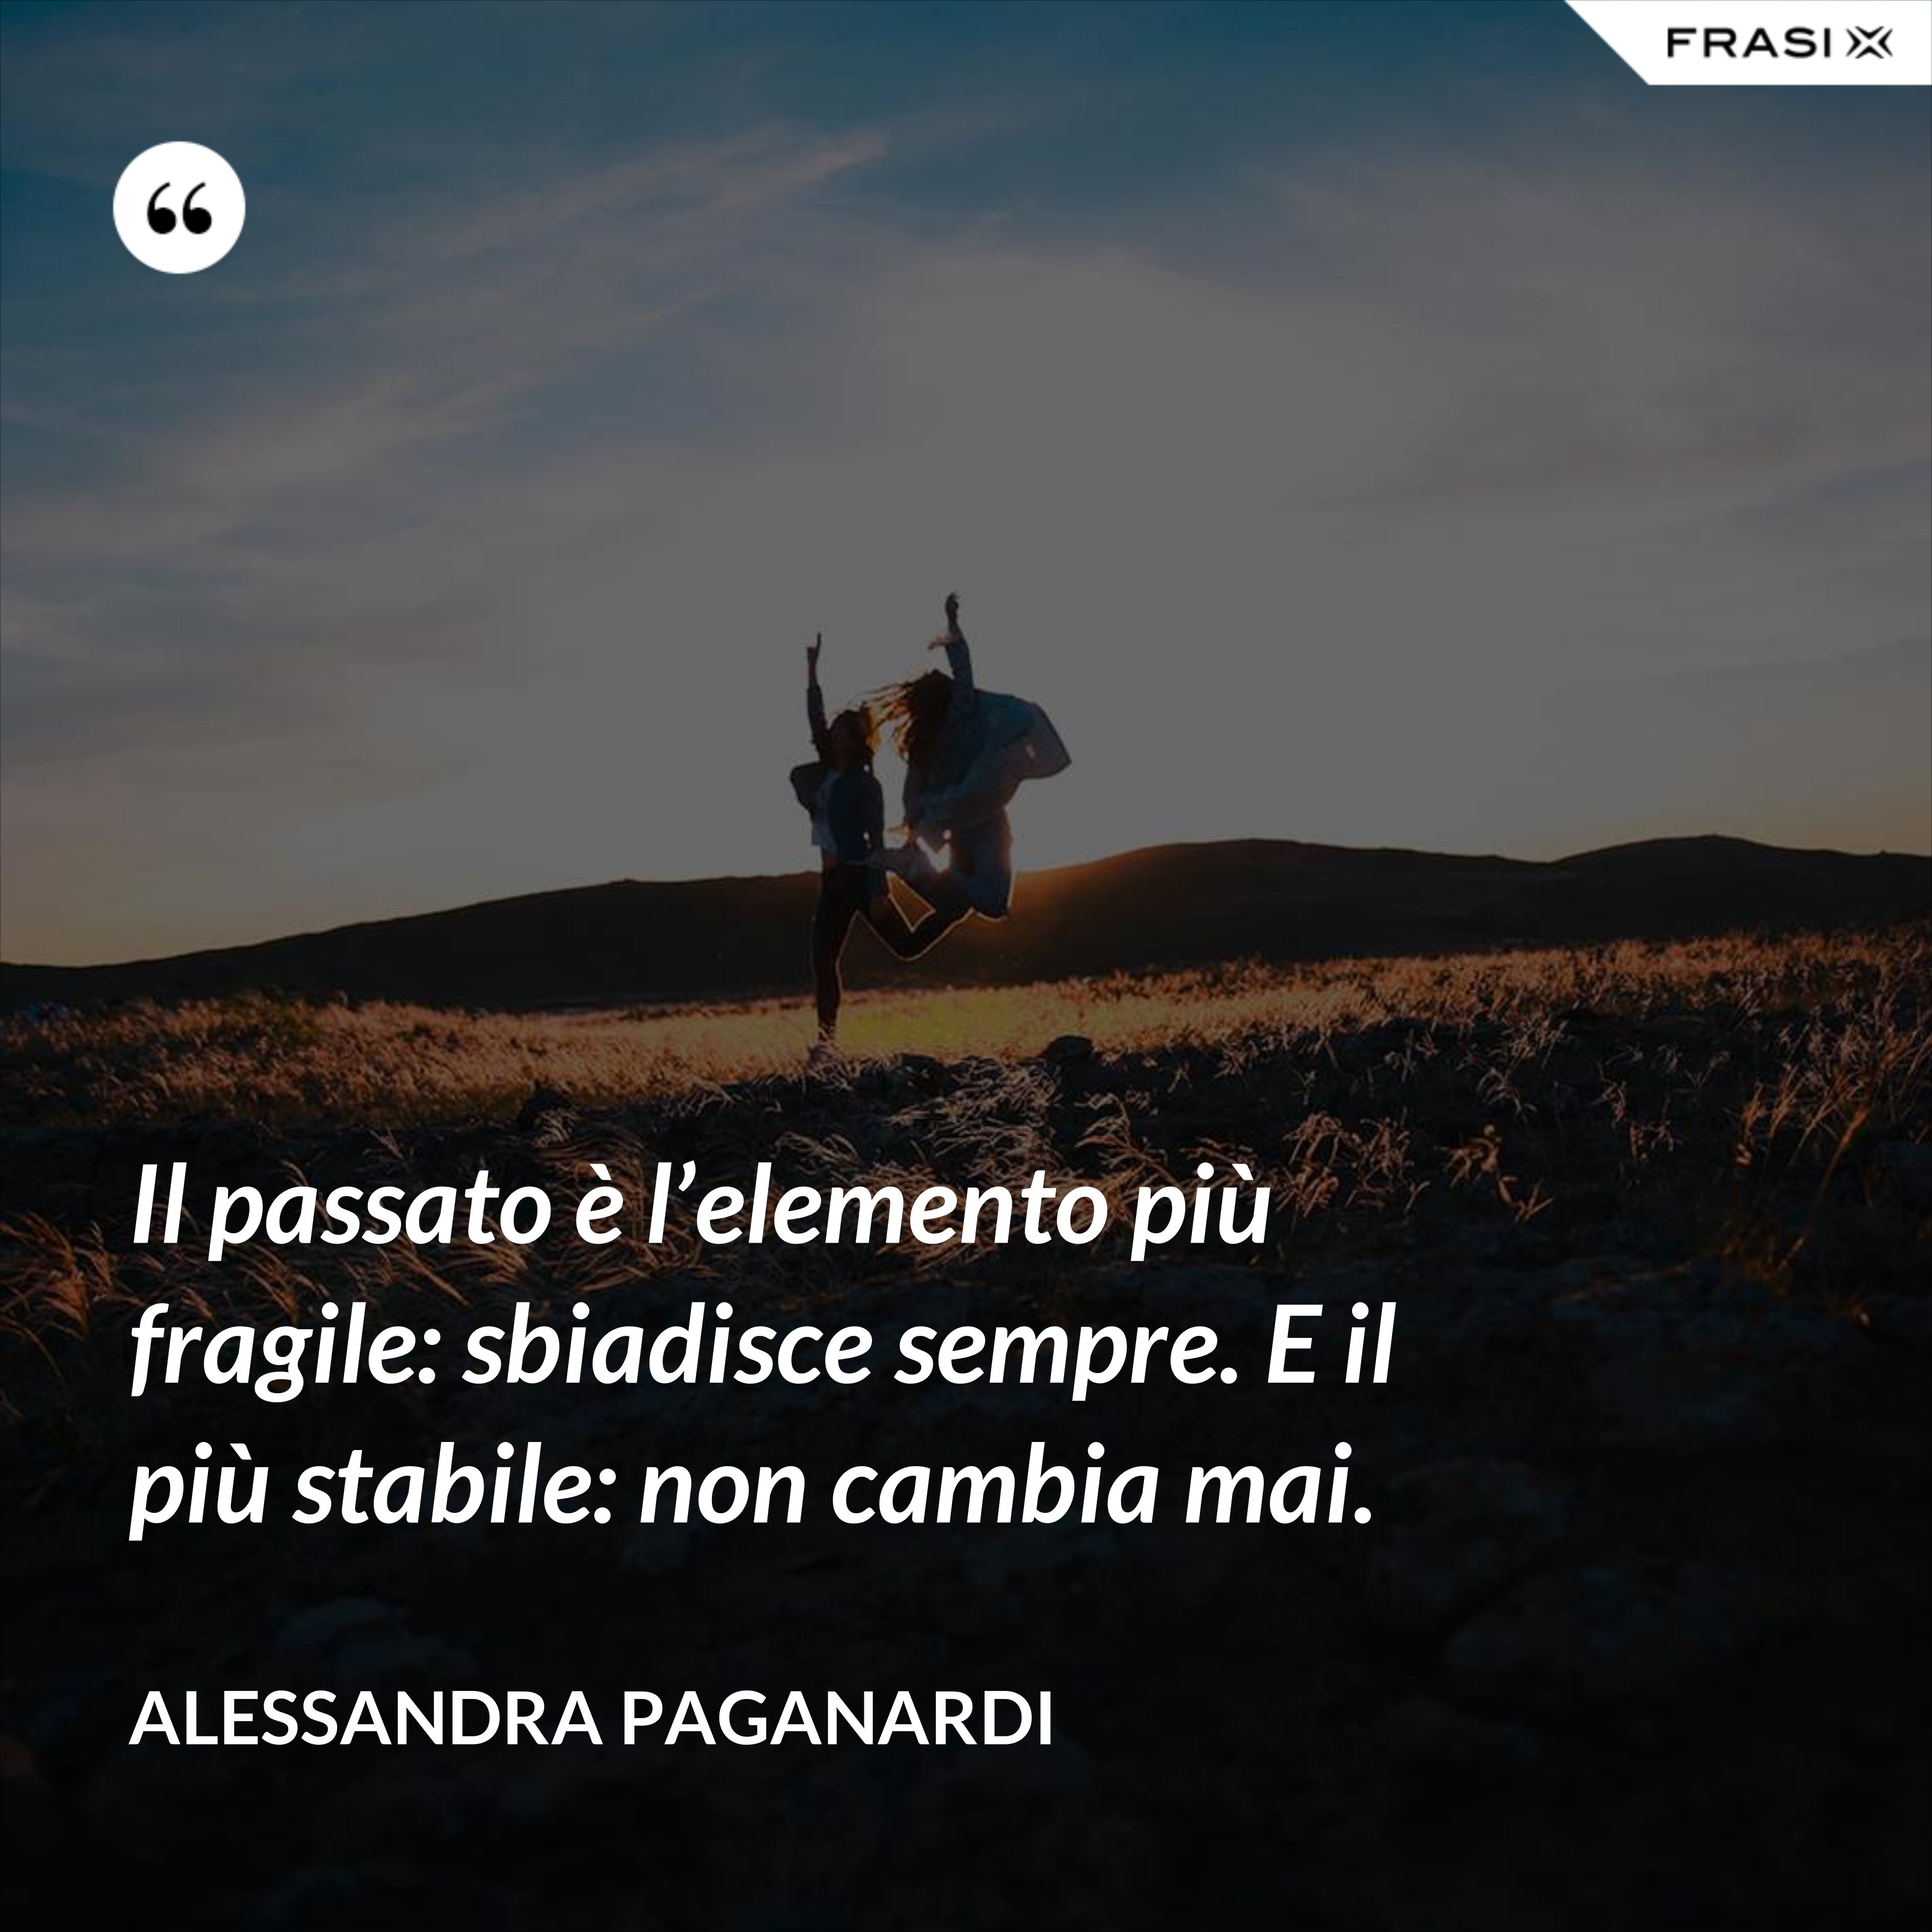 Il passato è l’elemento più fragile: sbiadisce sempre. E il più stabile: non cambia mai. - Alessandra Paganardi